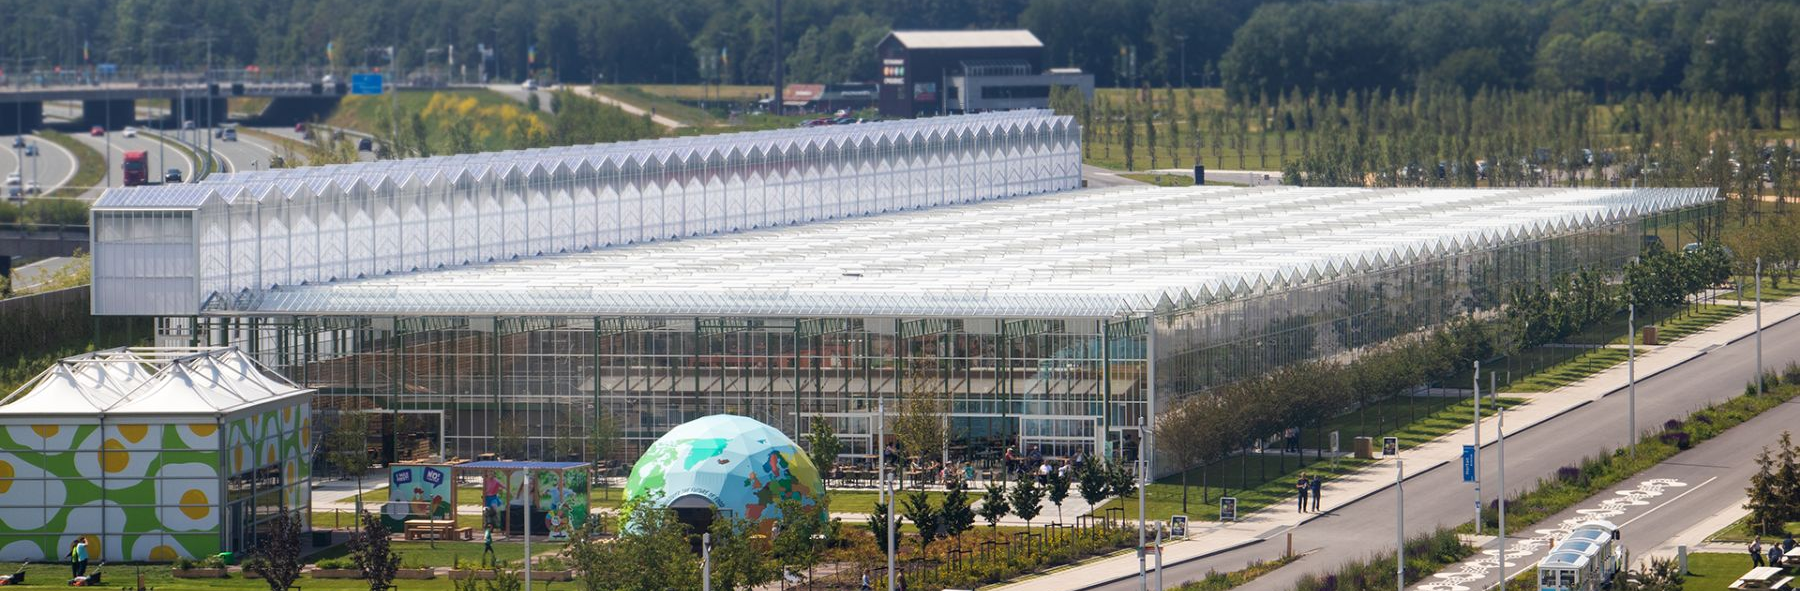 Floriade-Expo-2022